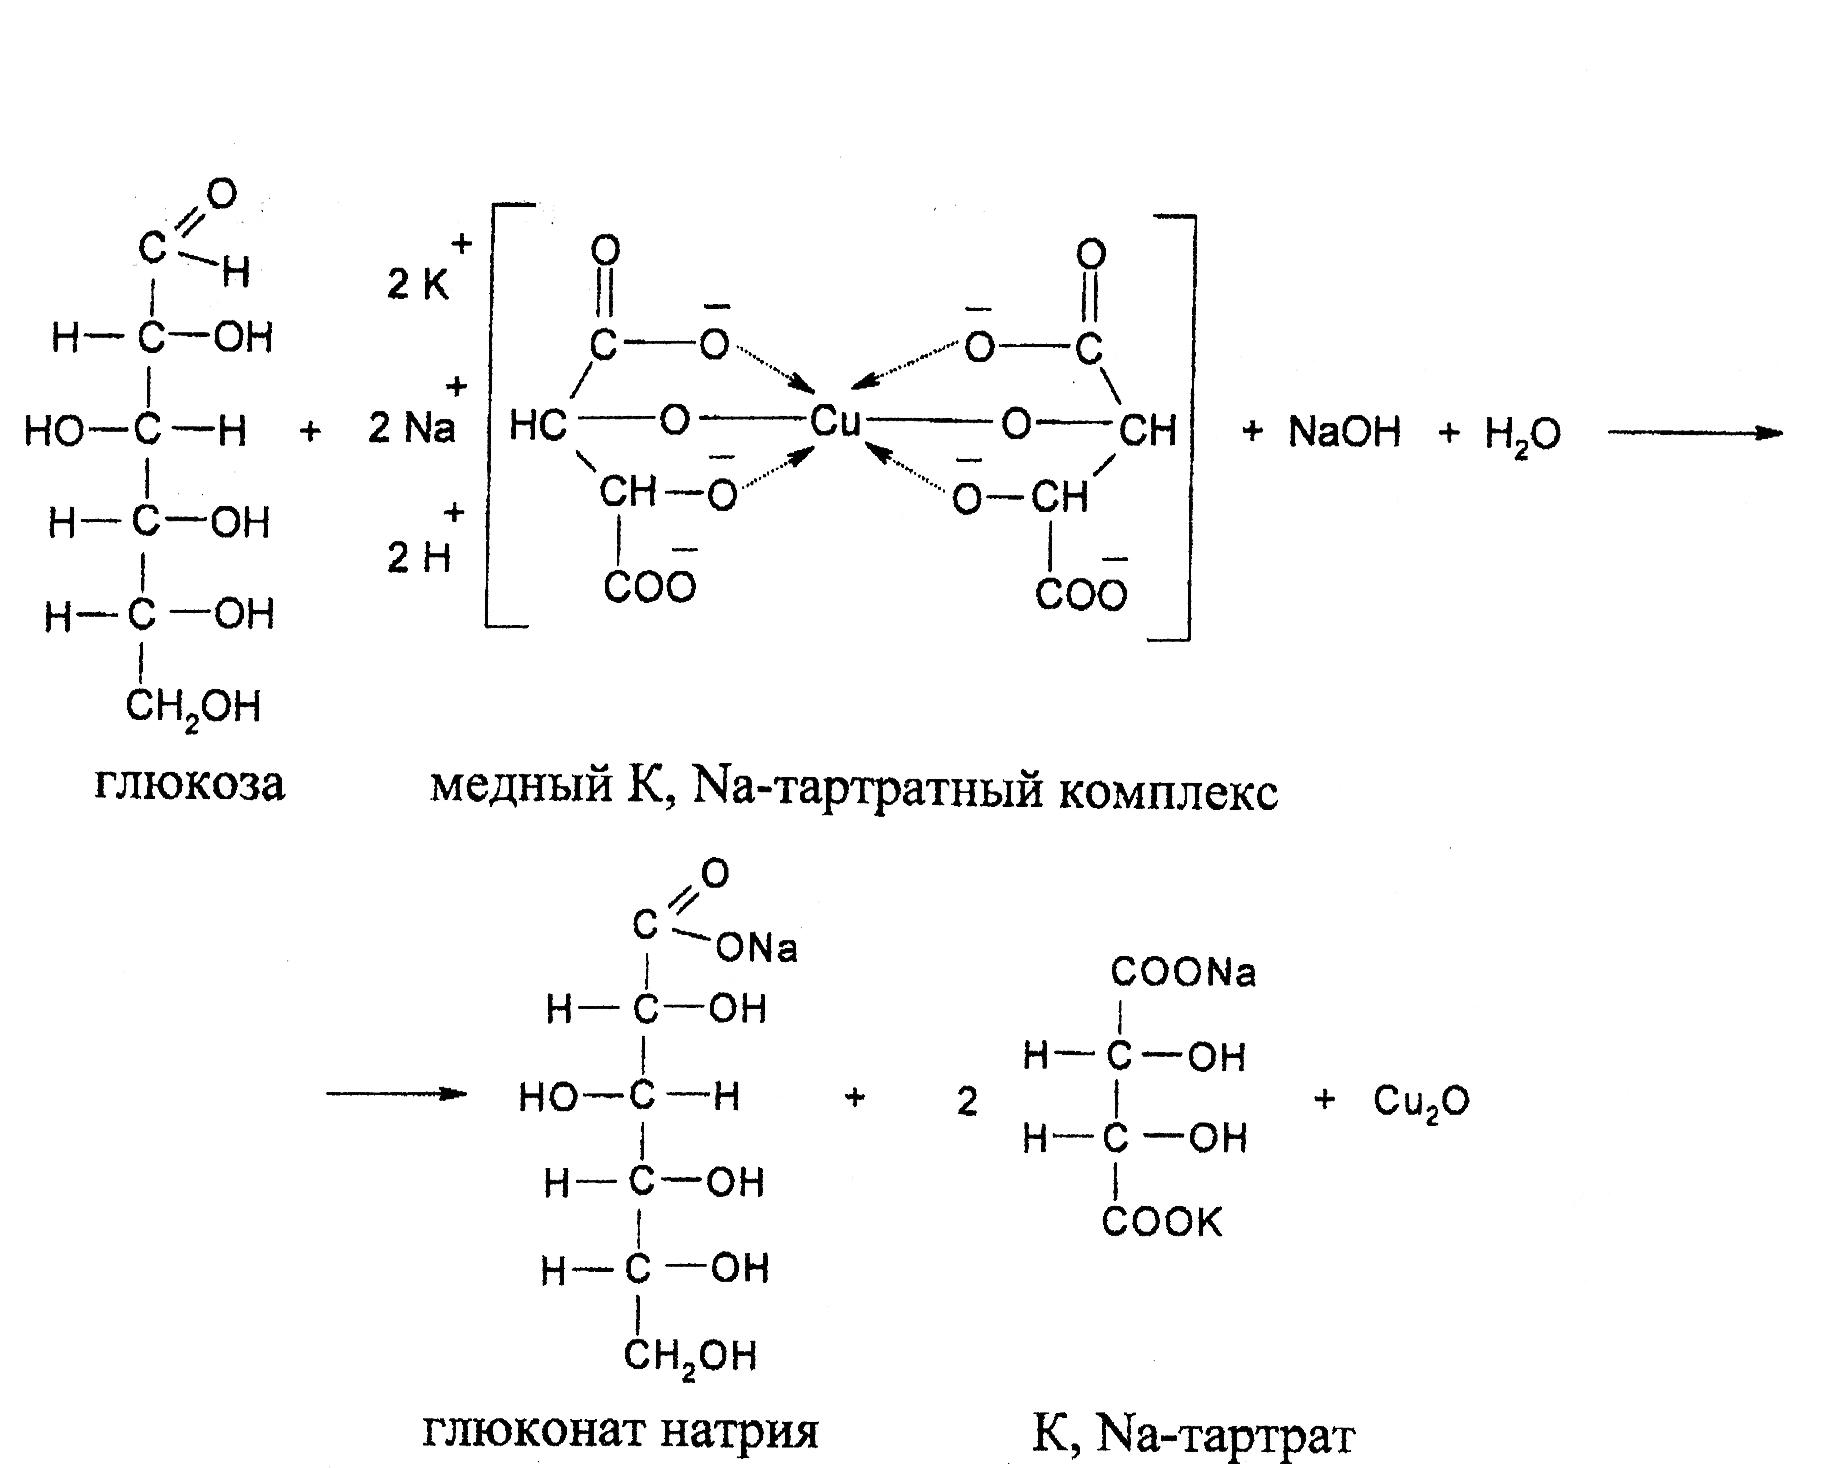 Фруктоза и гидроксид меди ii. Глюкоза раствор Фелинга реакция. Глюкоза с реактивом Фелинга реакция. Фруктоза и реактив Фелинга. Взаимодействие моносахаридов с реактивом Фелинга.